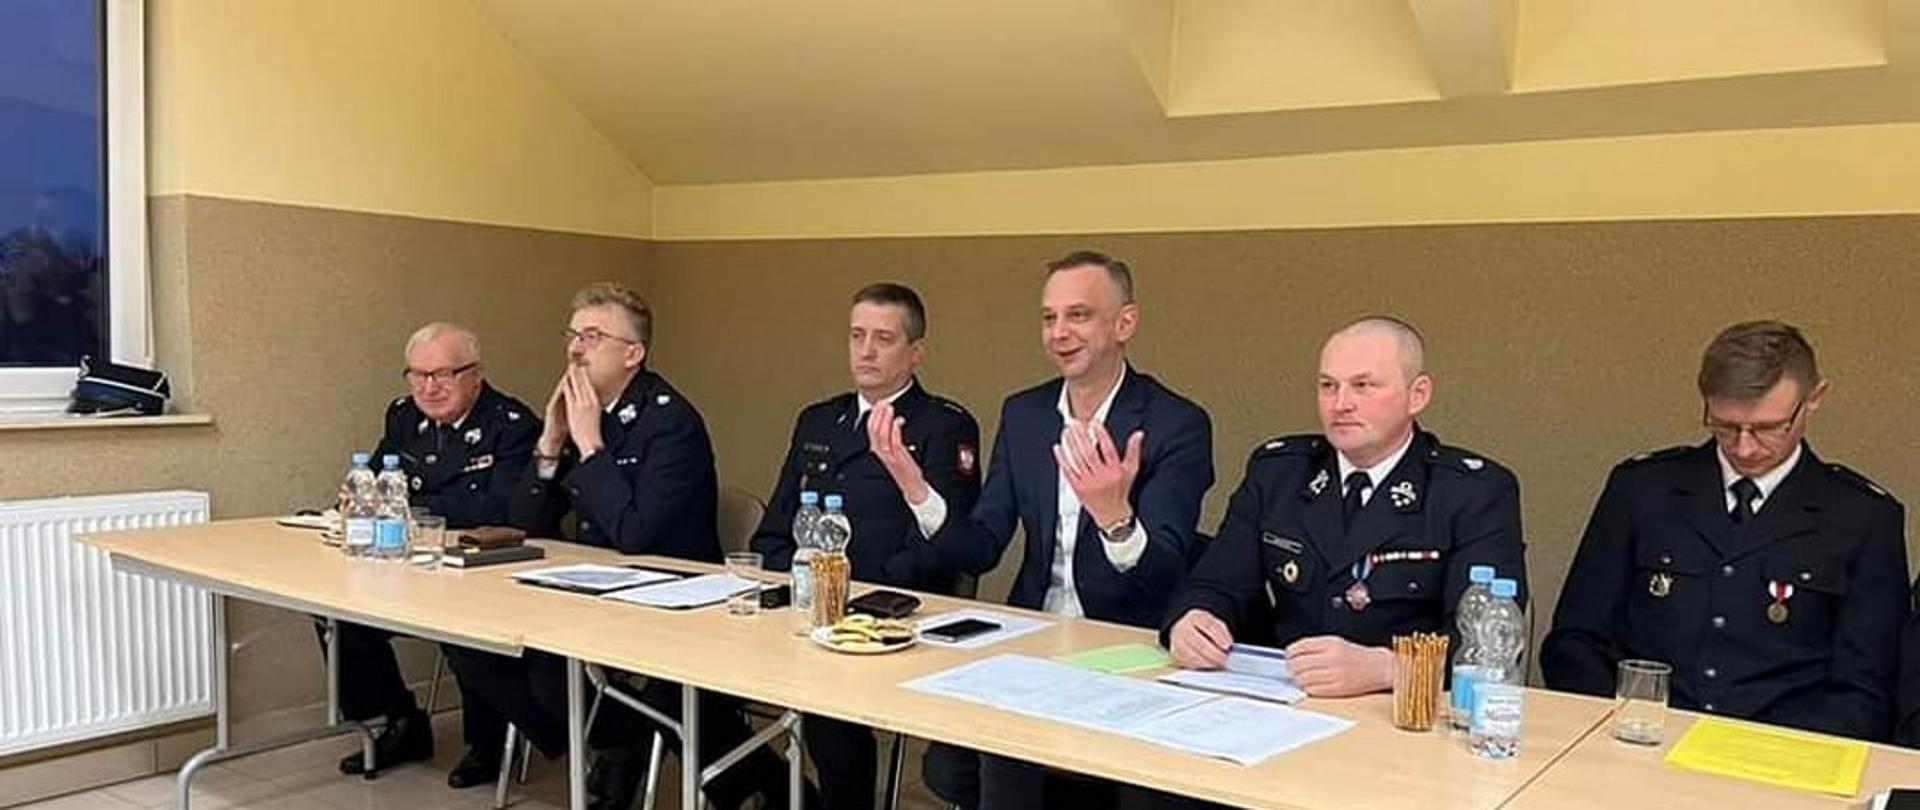 Walne Zebranie Sprawozdawcze Ochotniczej Straży Pożarnej w Kozowie